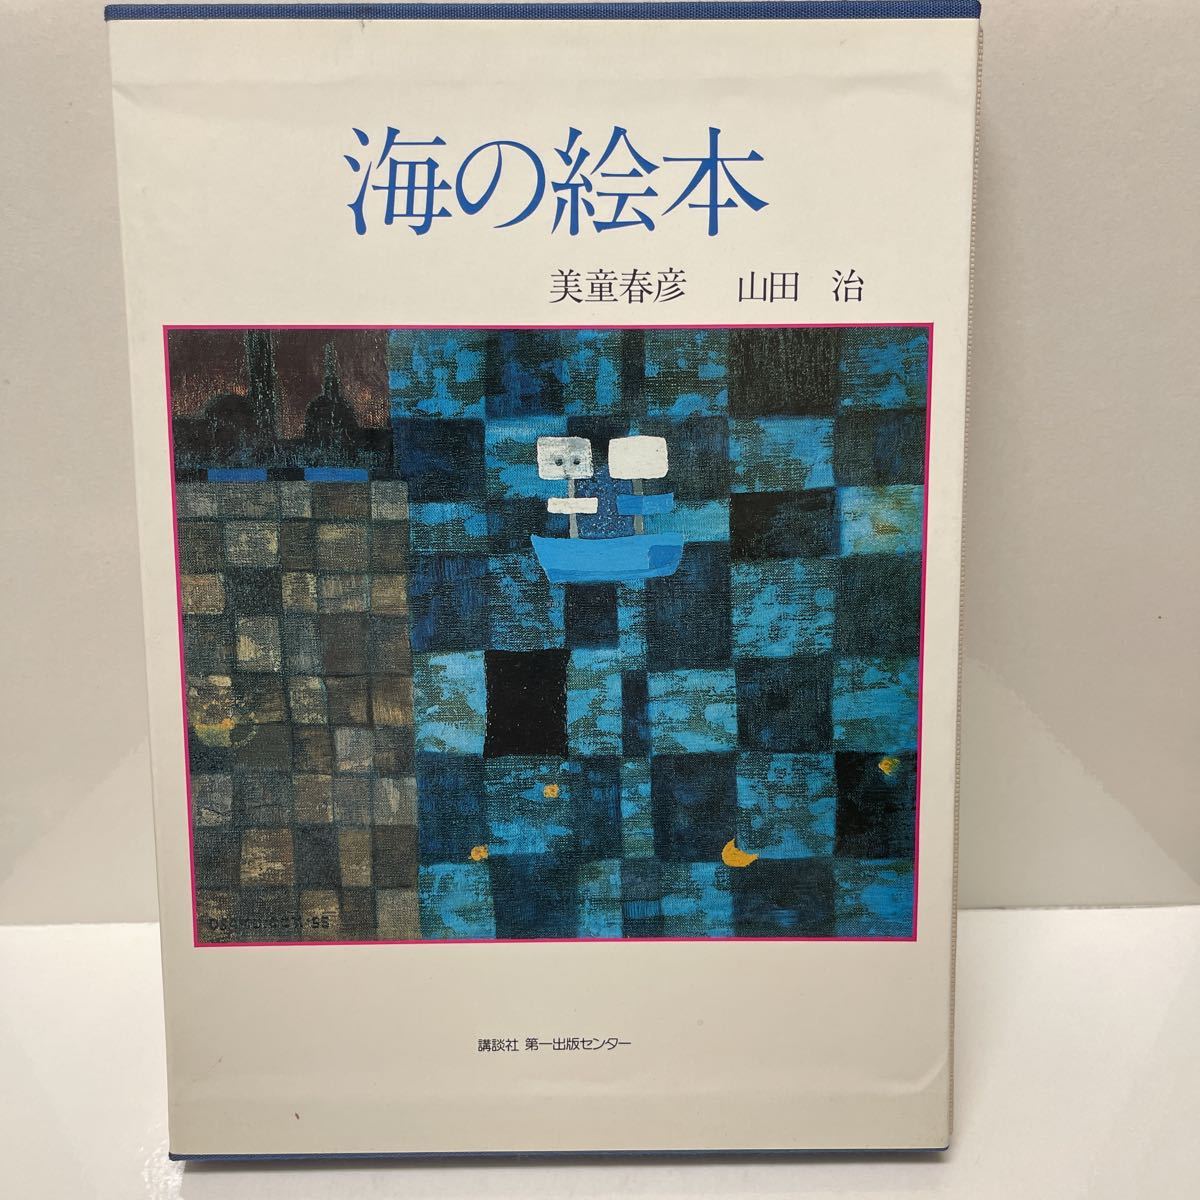 美堂晴彦和山田修创作的海洋图画书, 1986年由讲谈社第一出版中心出版, 第一版, 绘画, 画集, 美术书, 收藏, 其他的